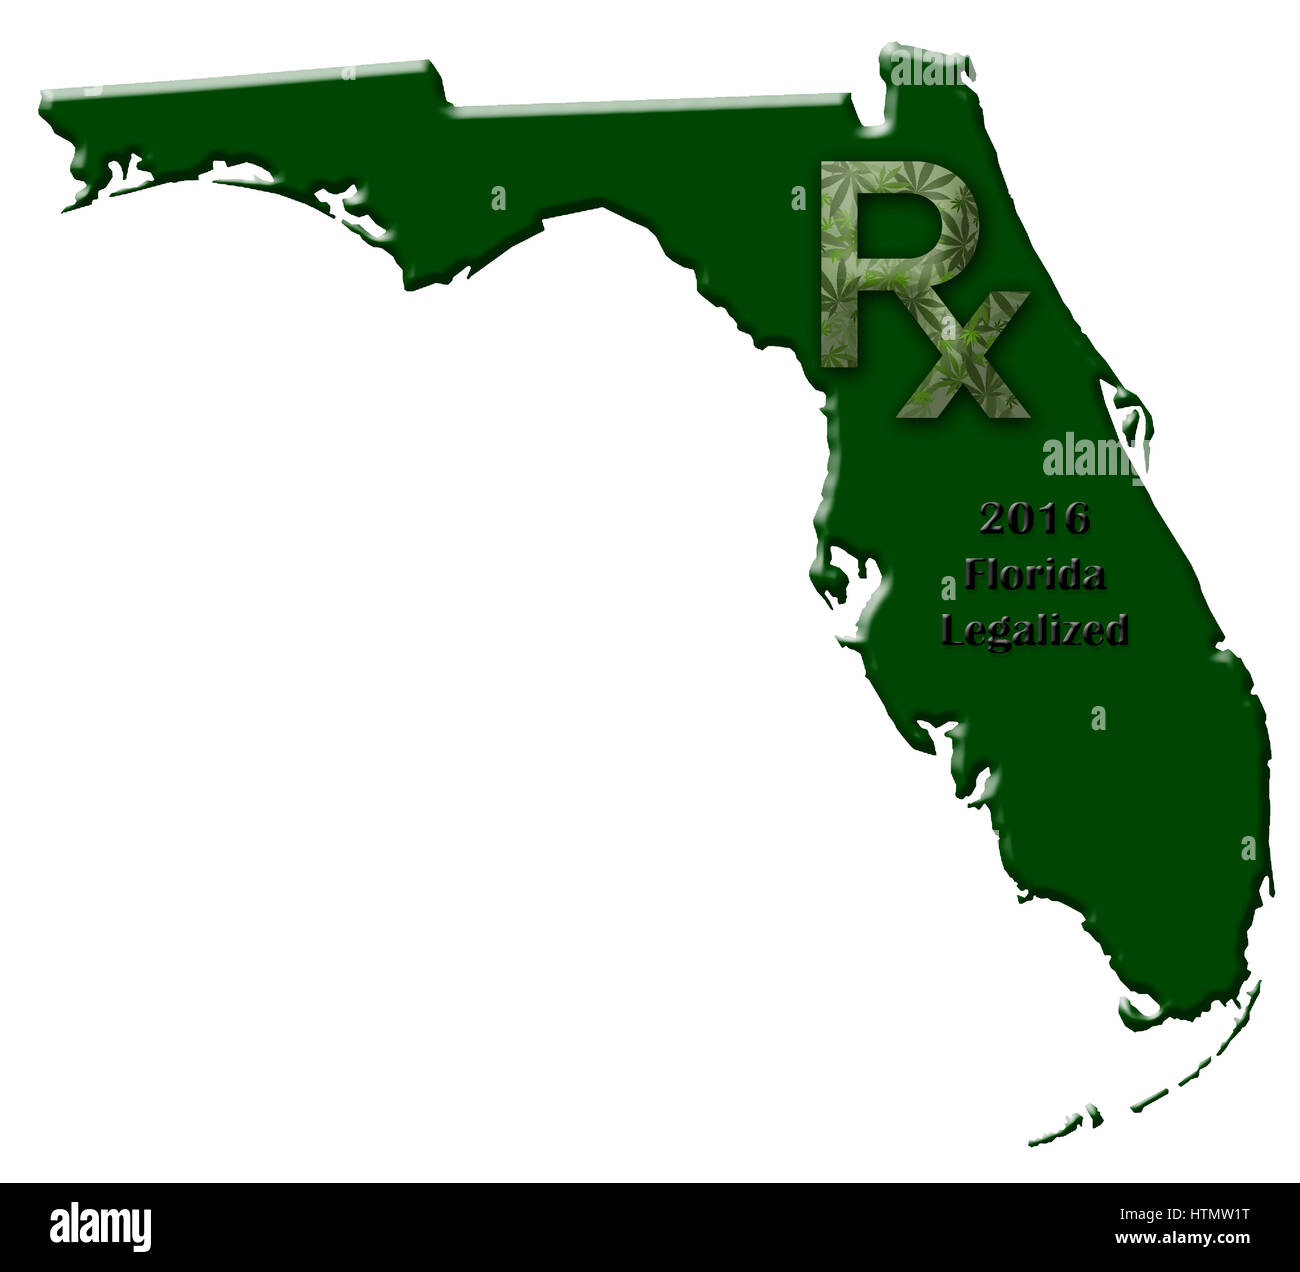 Plan de l'état de Floride illustrant quand la marijuana médicale a été légalisé. Banque D'Images